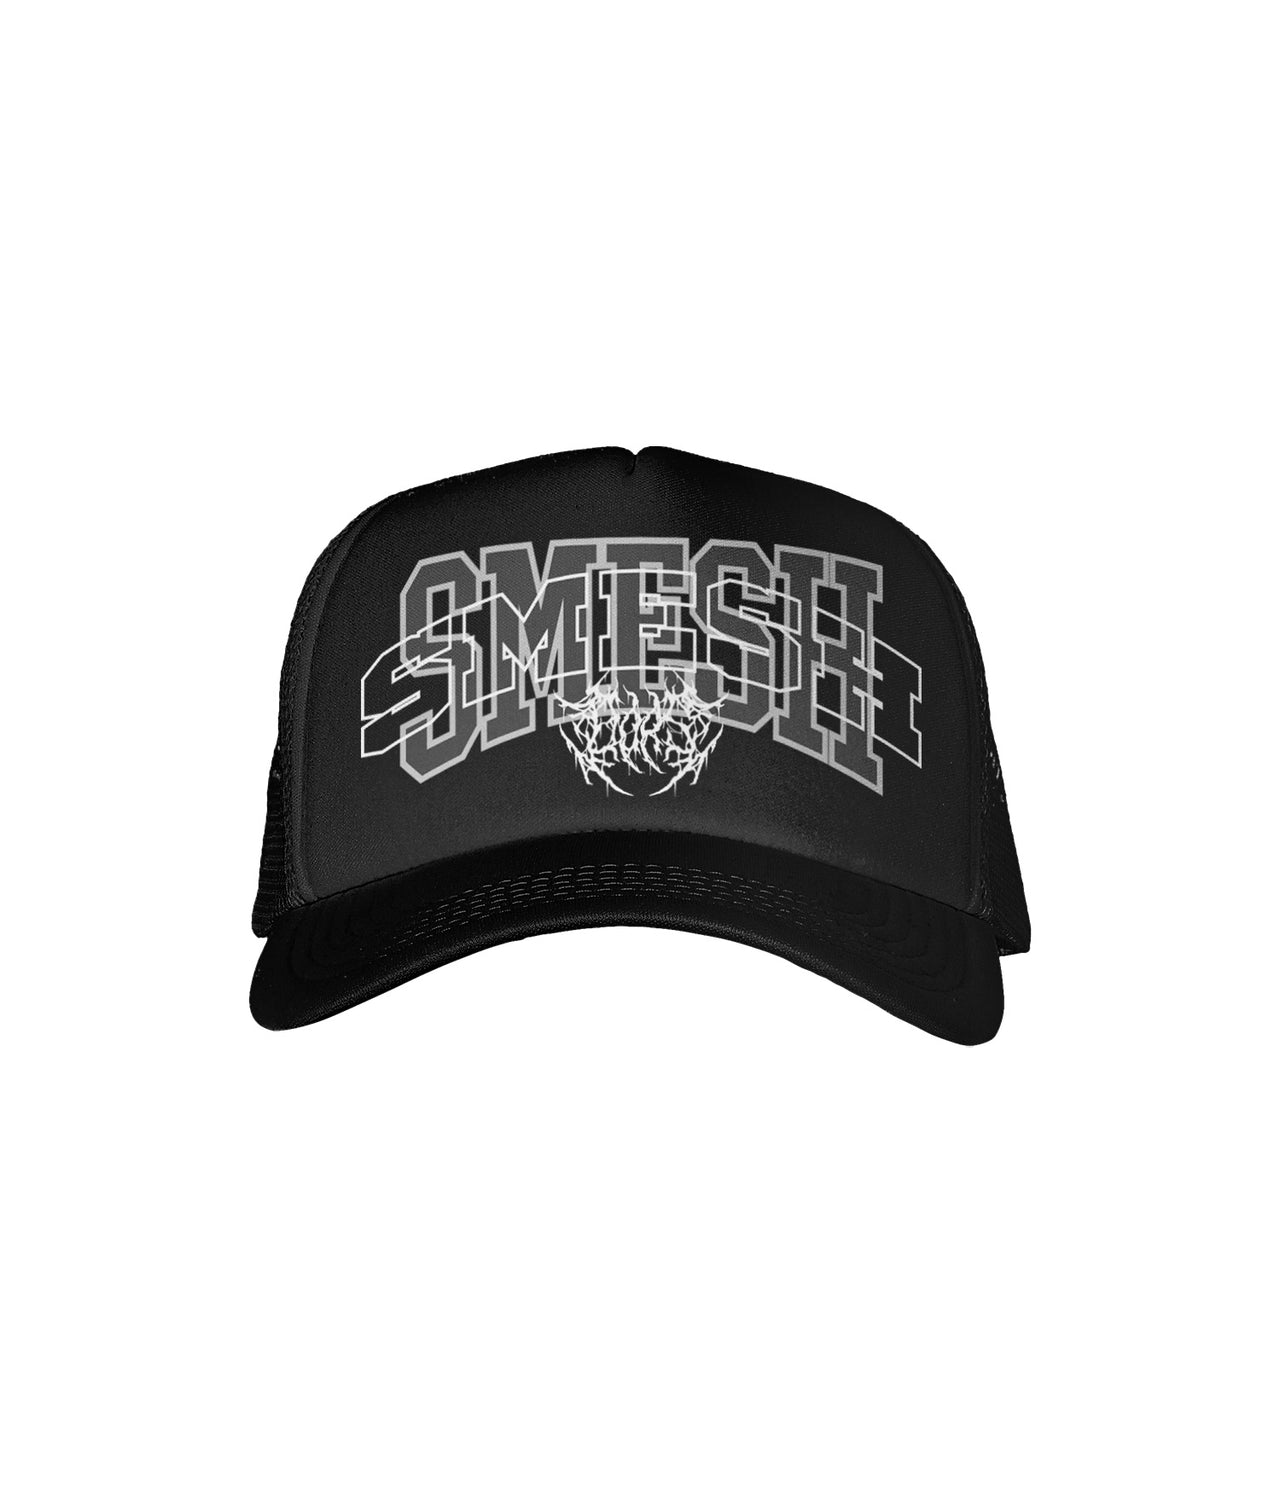 Smesh Trucker Hat